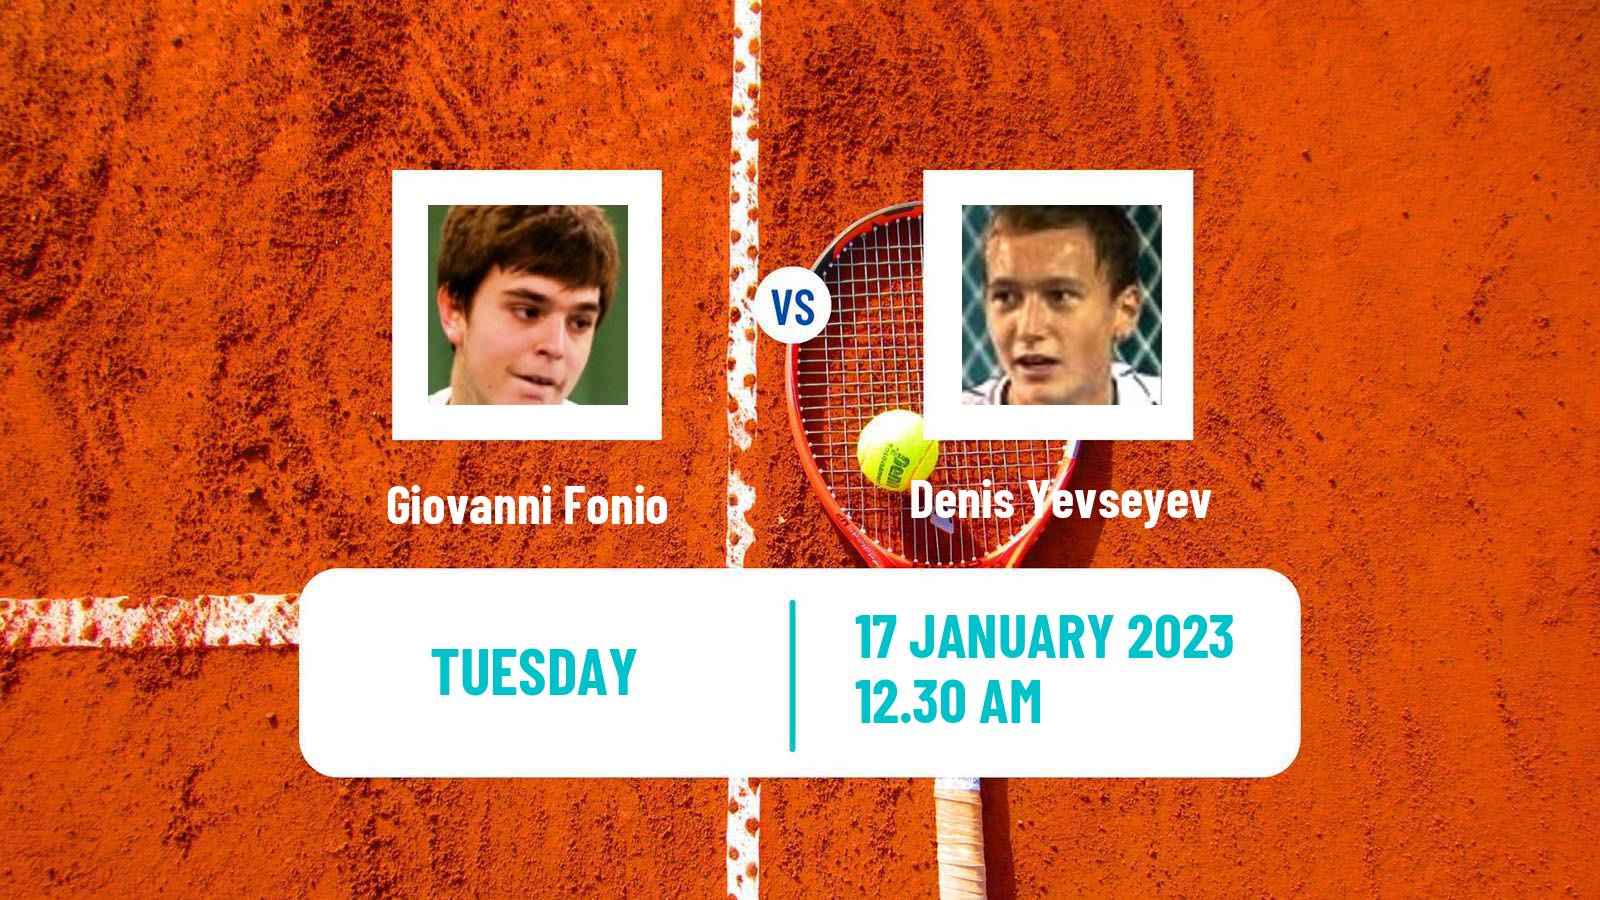 Tennis ATP Challenger Giovanni Fonio - Denis Yevseyev